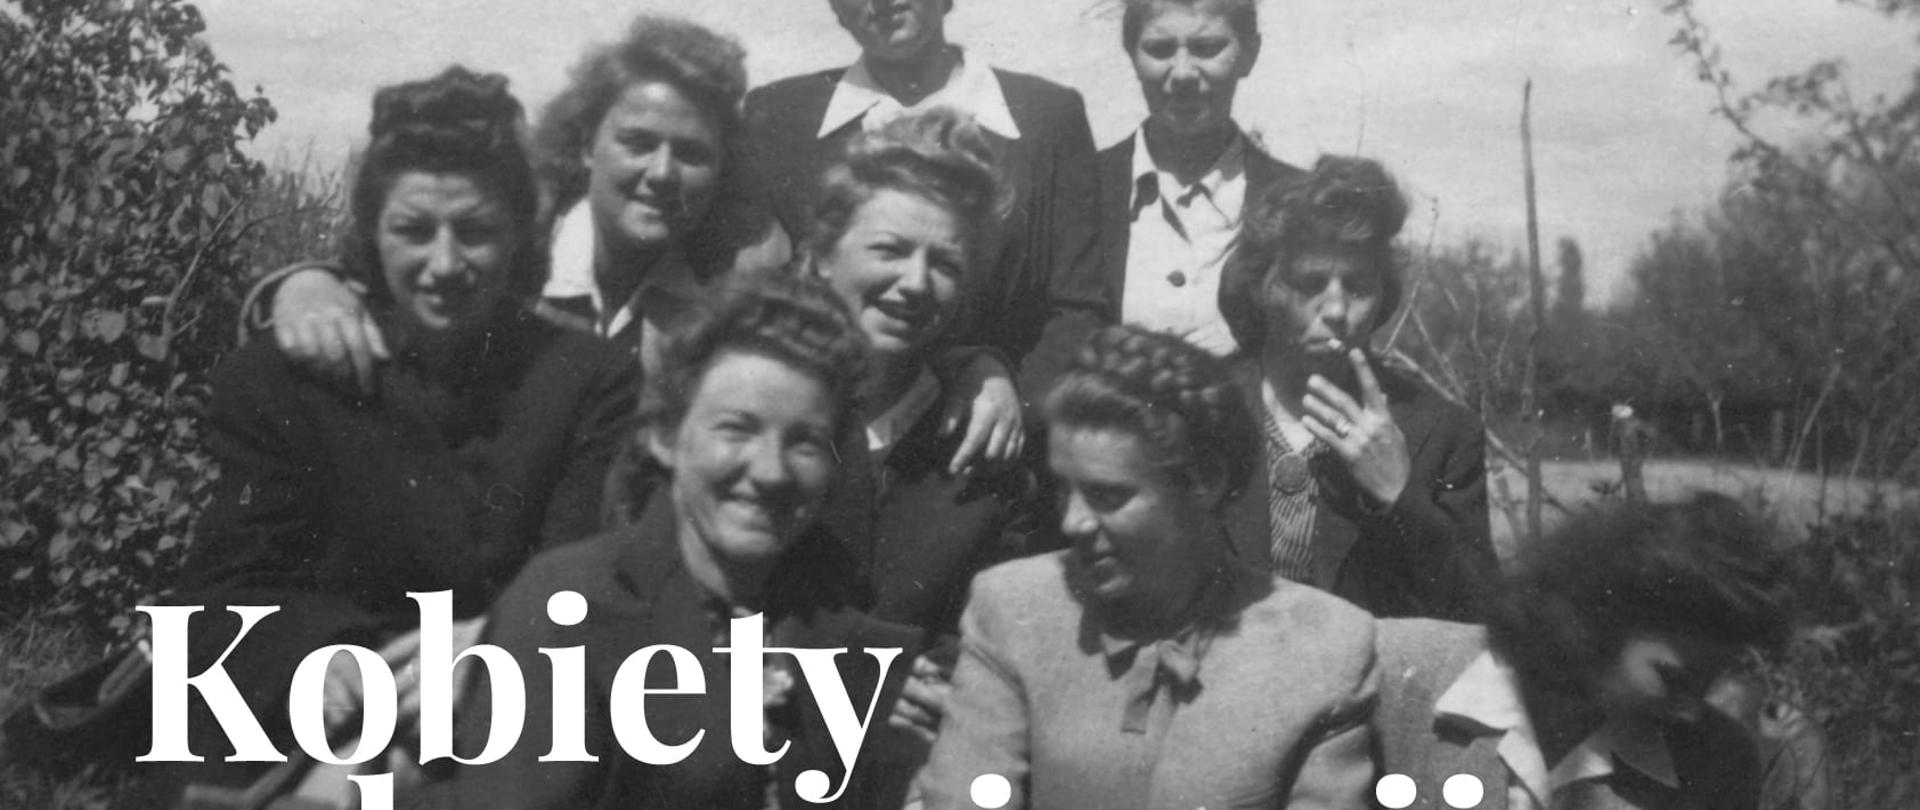 Kobiety w konspiracji – historia Wojskowej Służby Kobiet i jej działalności w VI Rejonie „Helenów” VII Obwodu AK „Obroża” w latach 1939-1945 - dyskusja panelowa i wystawa